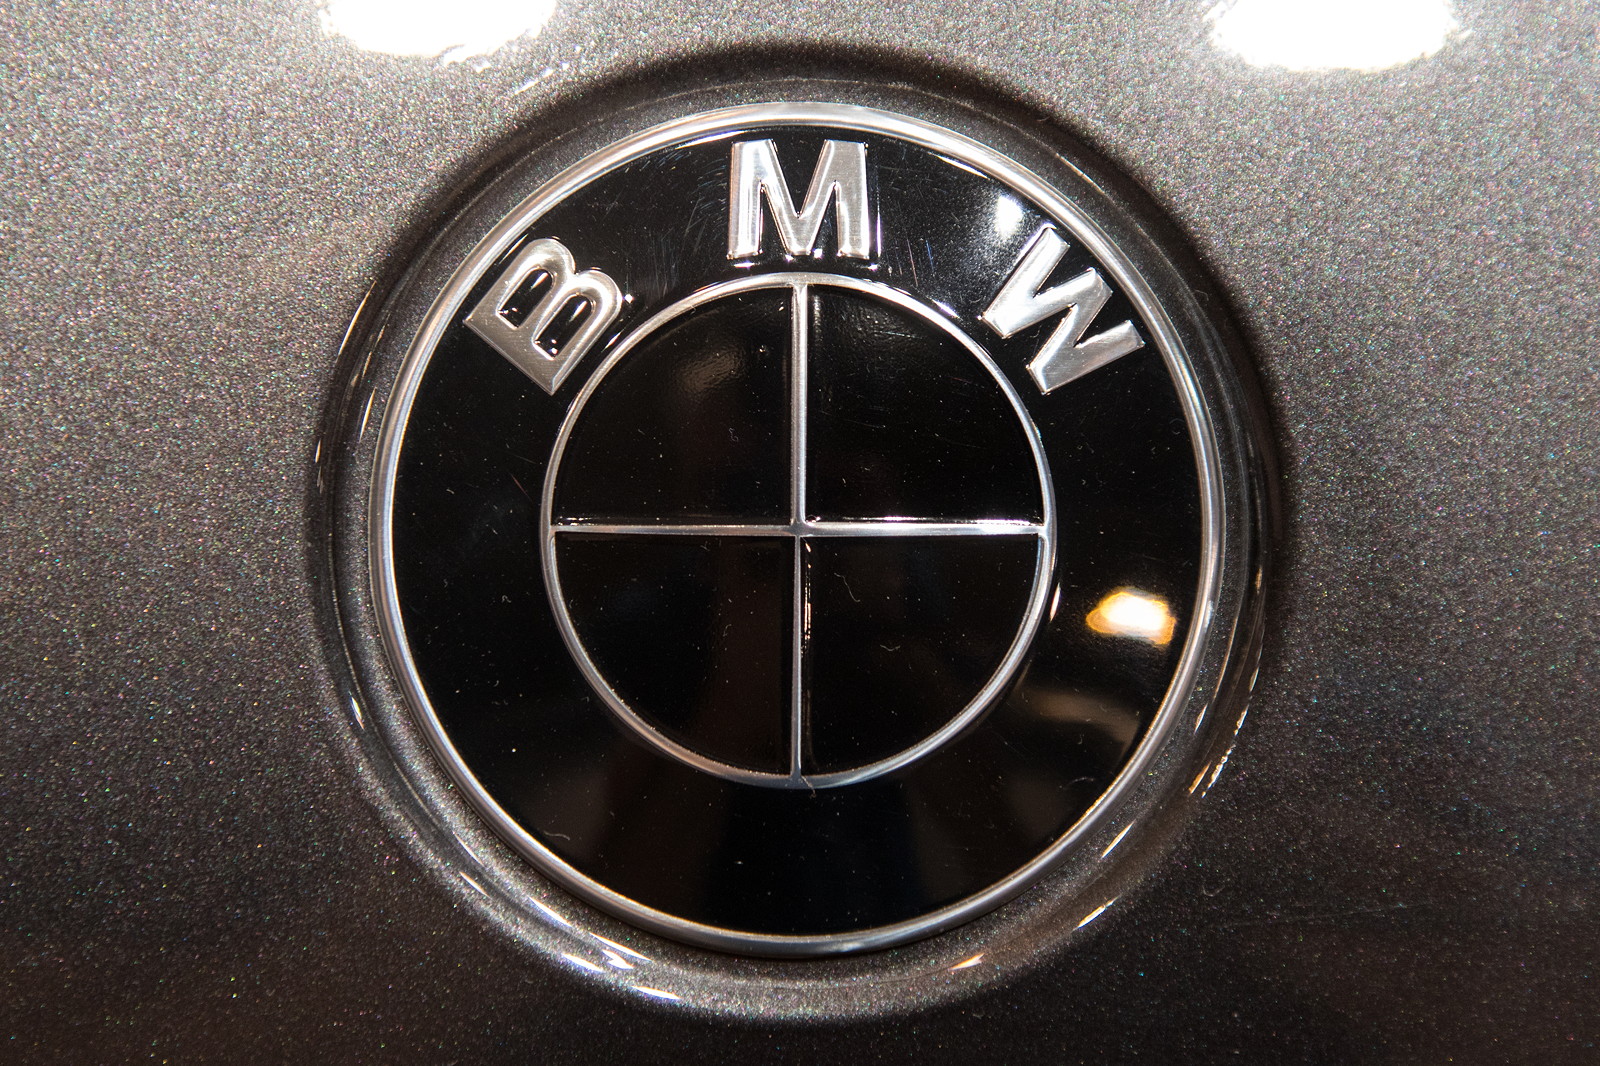 Foto: Essen Motor Show 2017: BMW M550i mit BMW Logo in schwarz. (vergrößert)